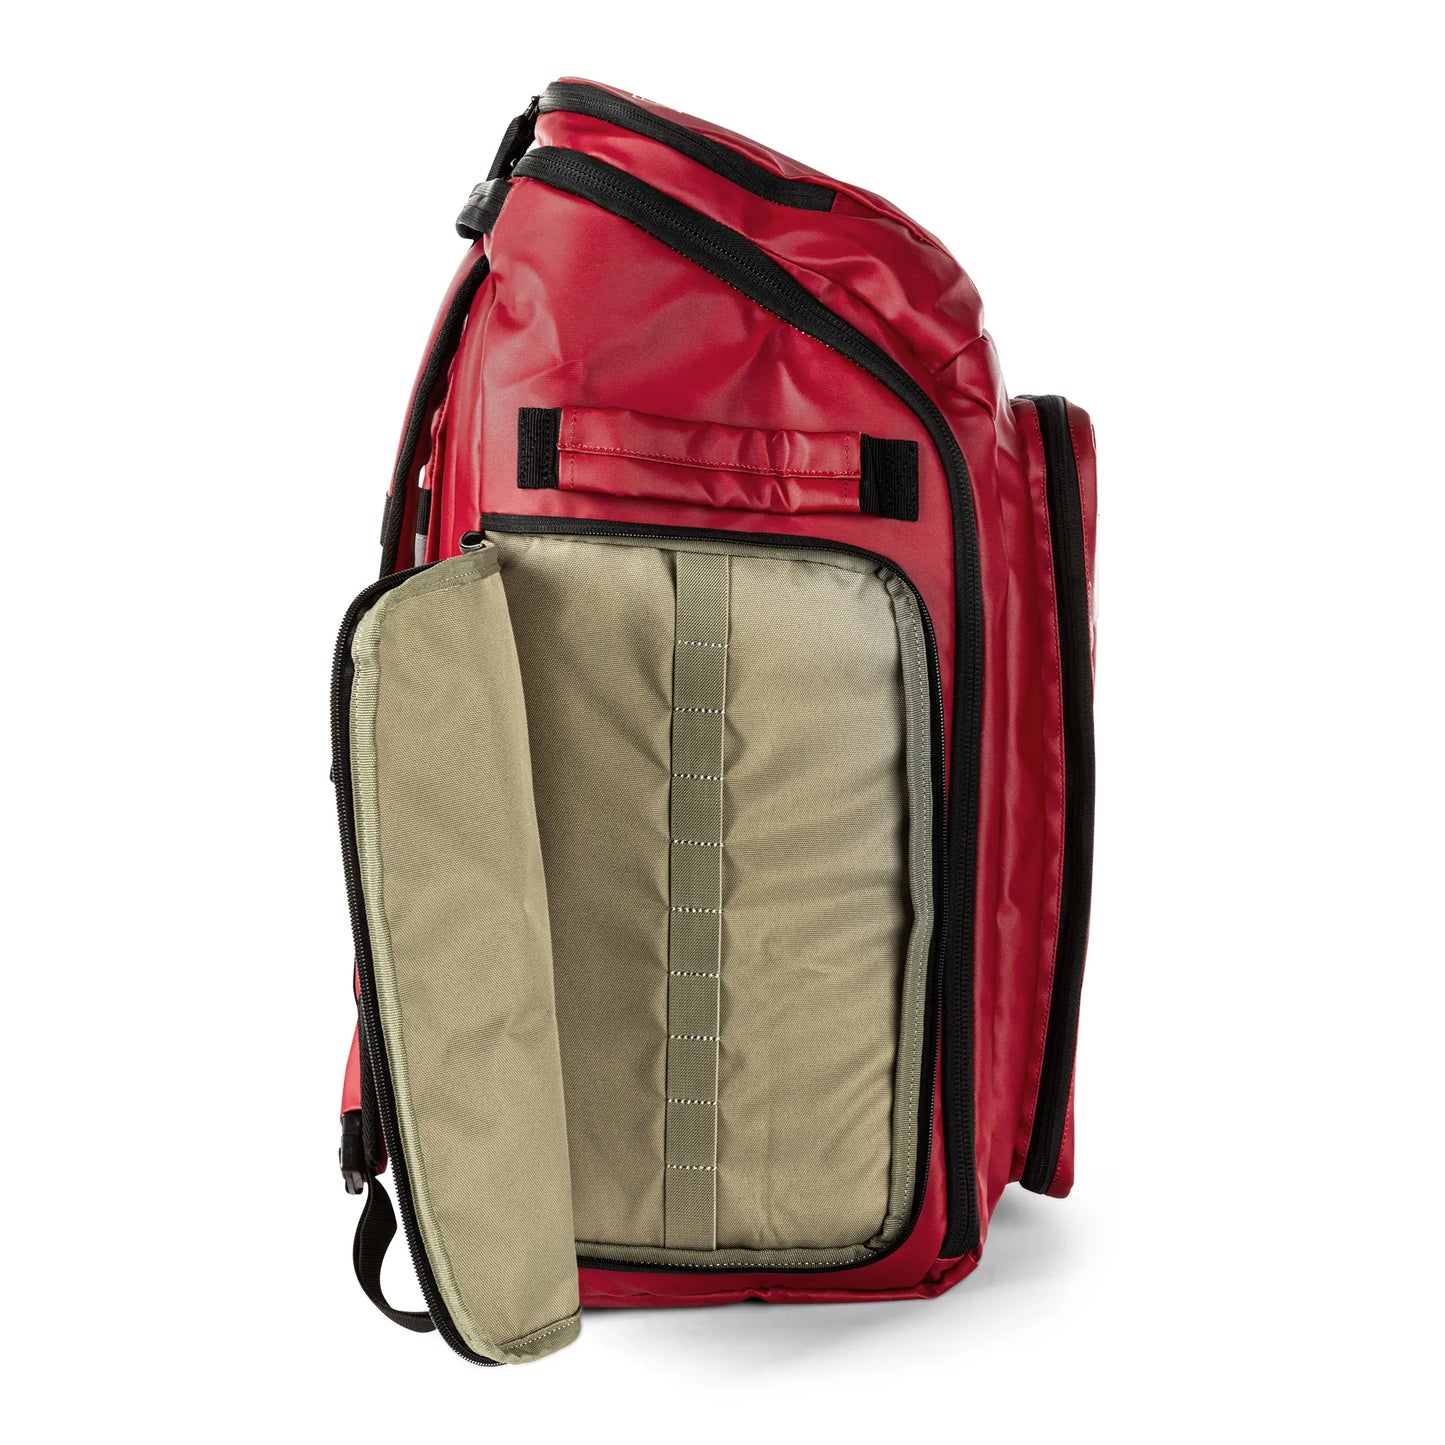 5.11 Tactical Responder 72 Backpack - 50 liter